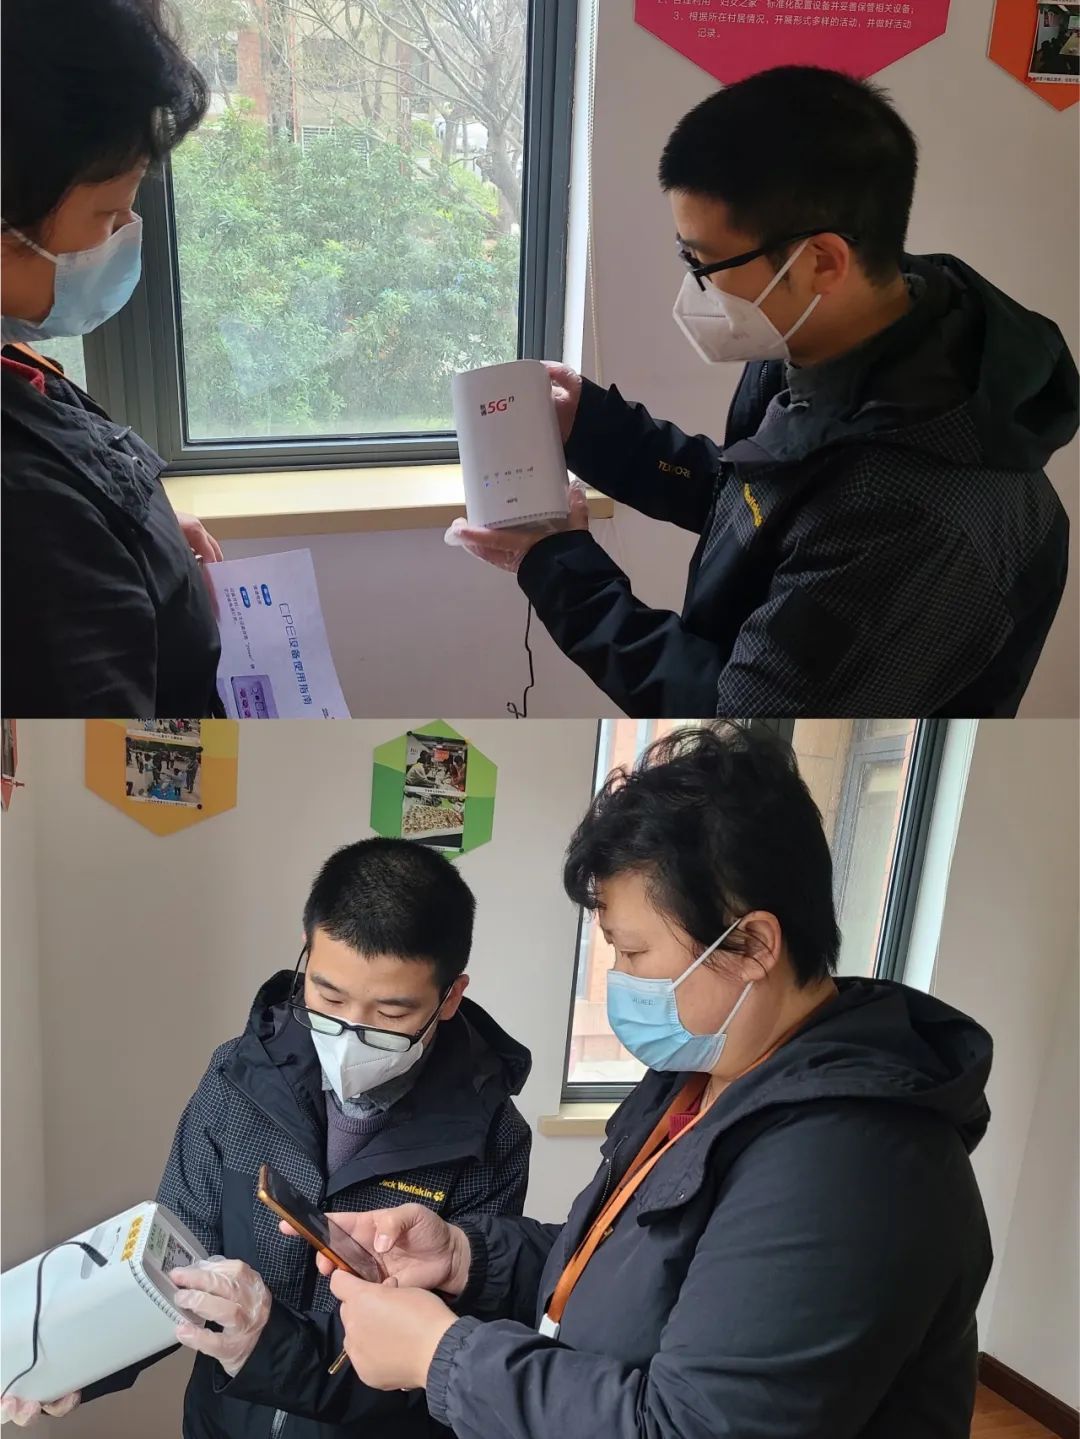 China Unicom использует «черные» технологии для борьбы с эпидемией в воздухе и создает «сетку» для предотвращения и контроля эпидемии.